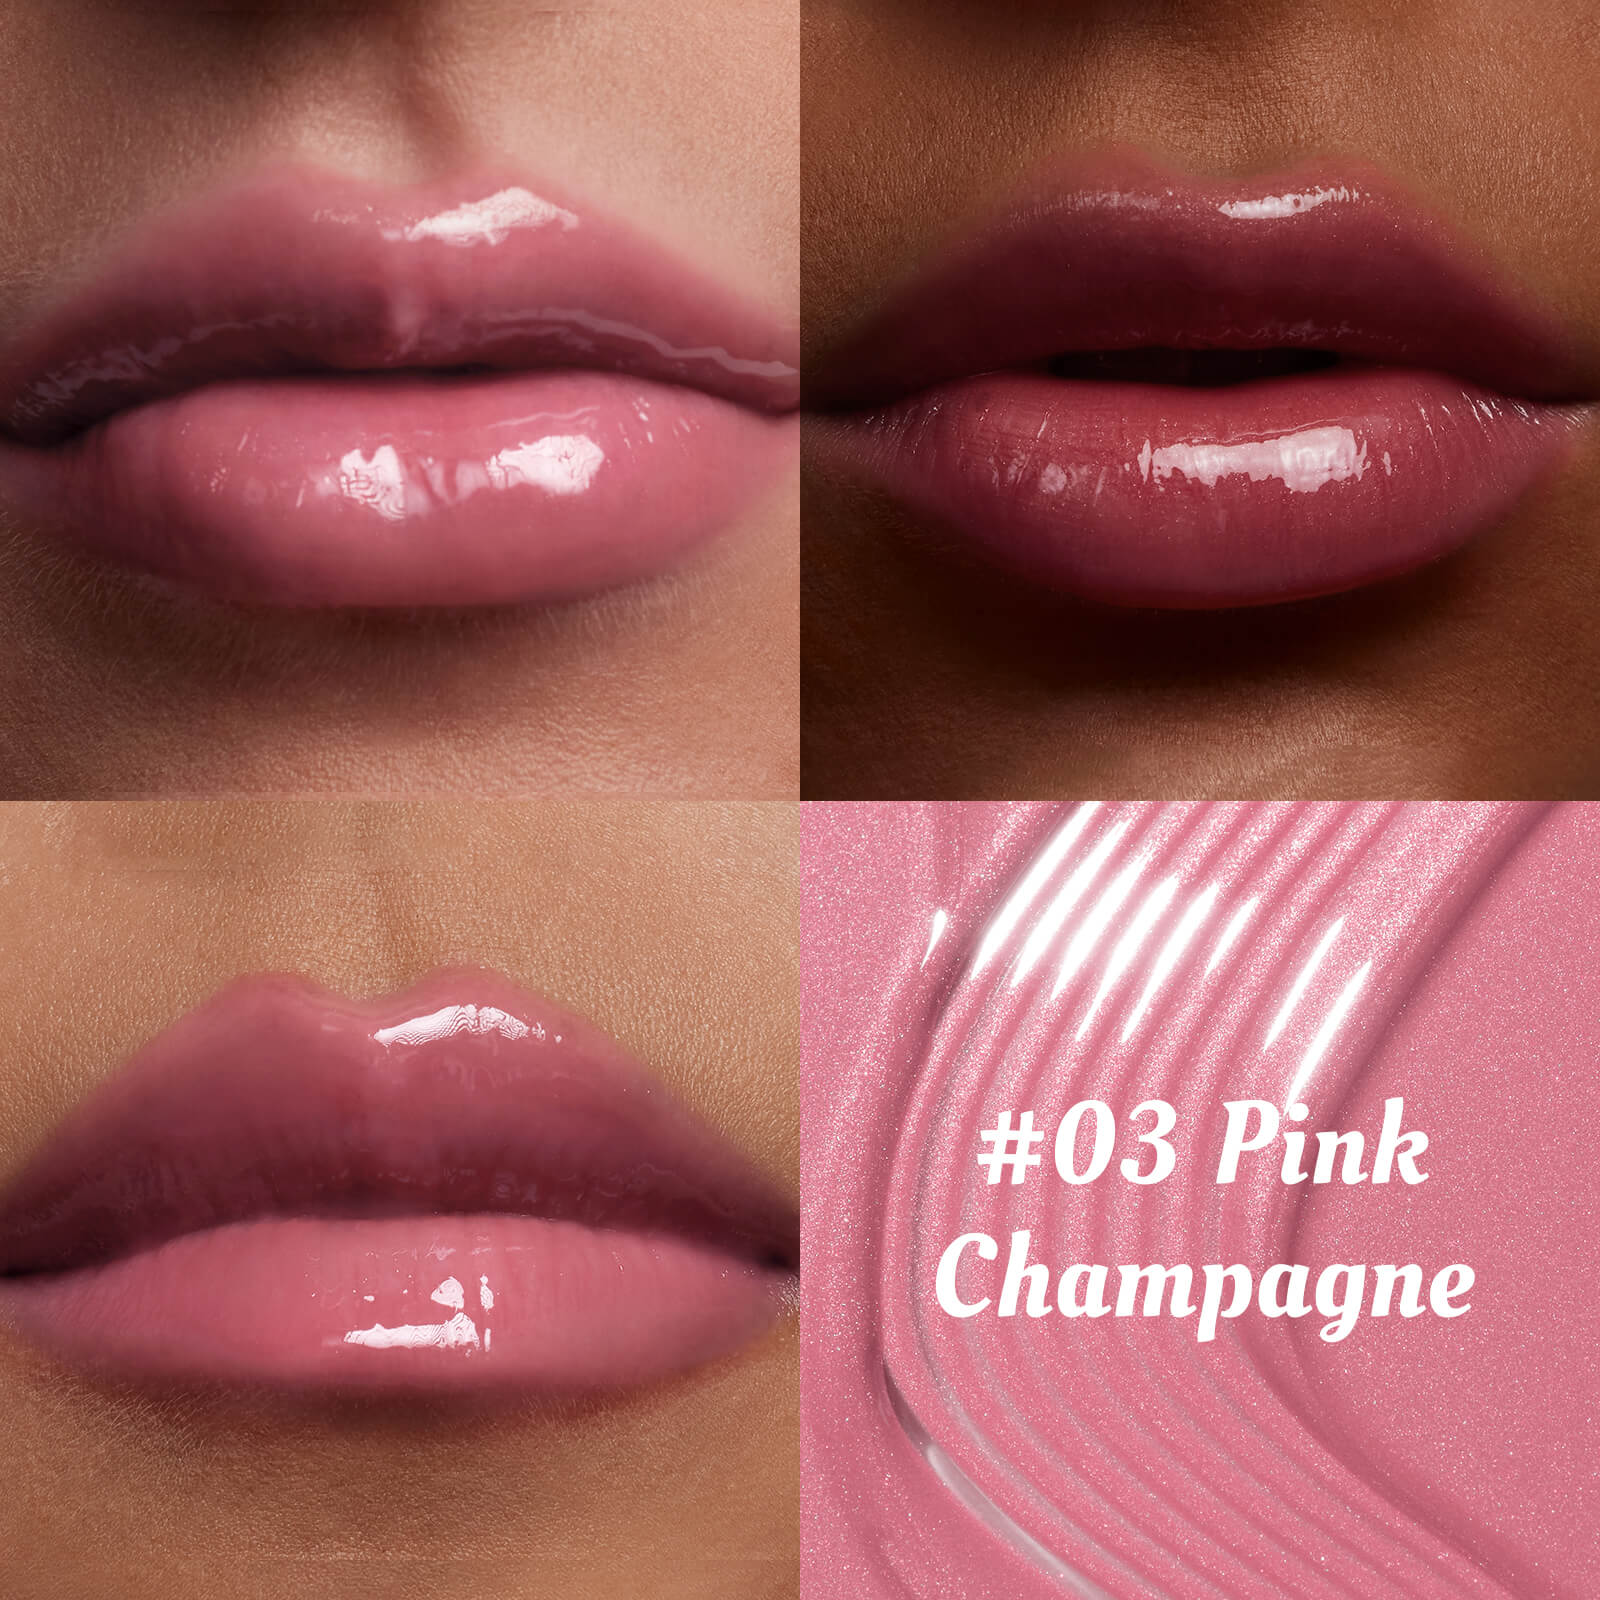 ITY 03 Pink Lip Gloss